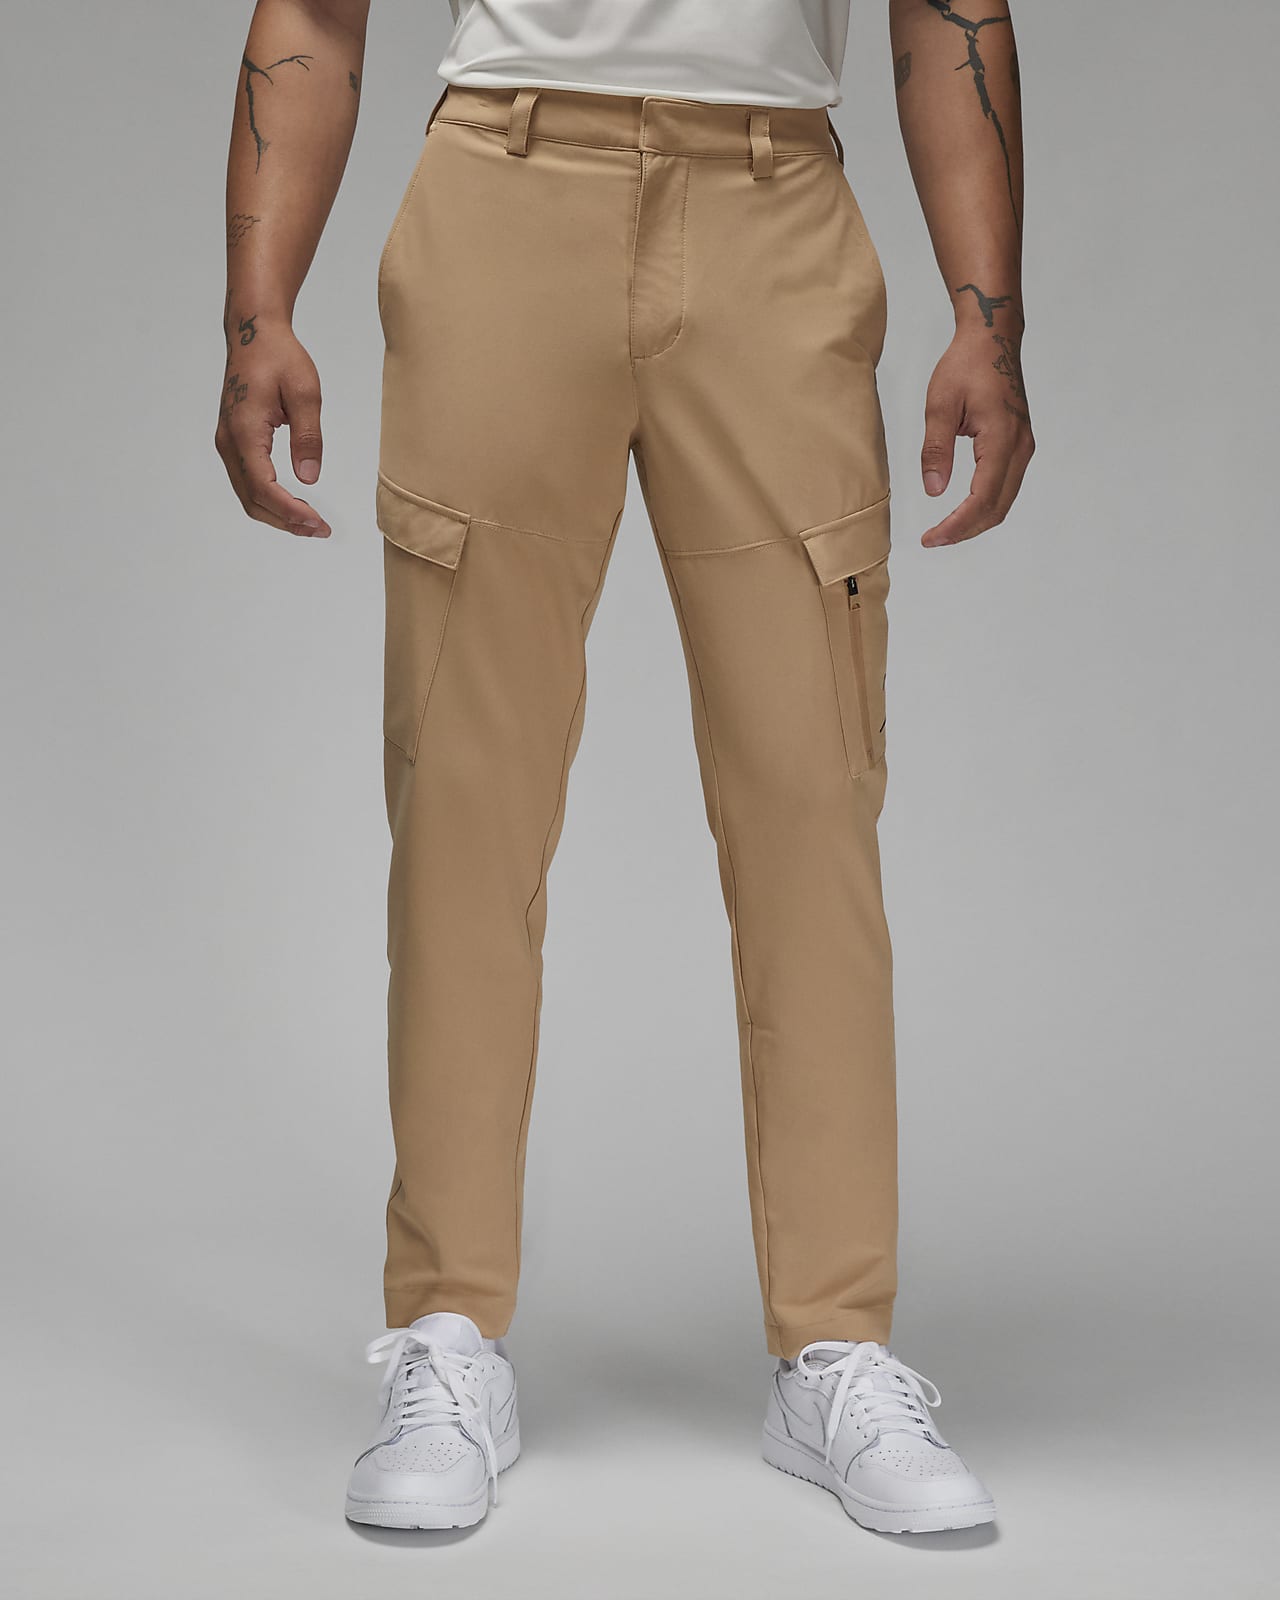 Jordan Golf Pantalons - Home